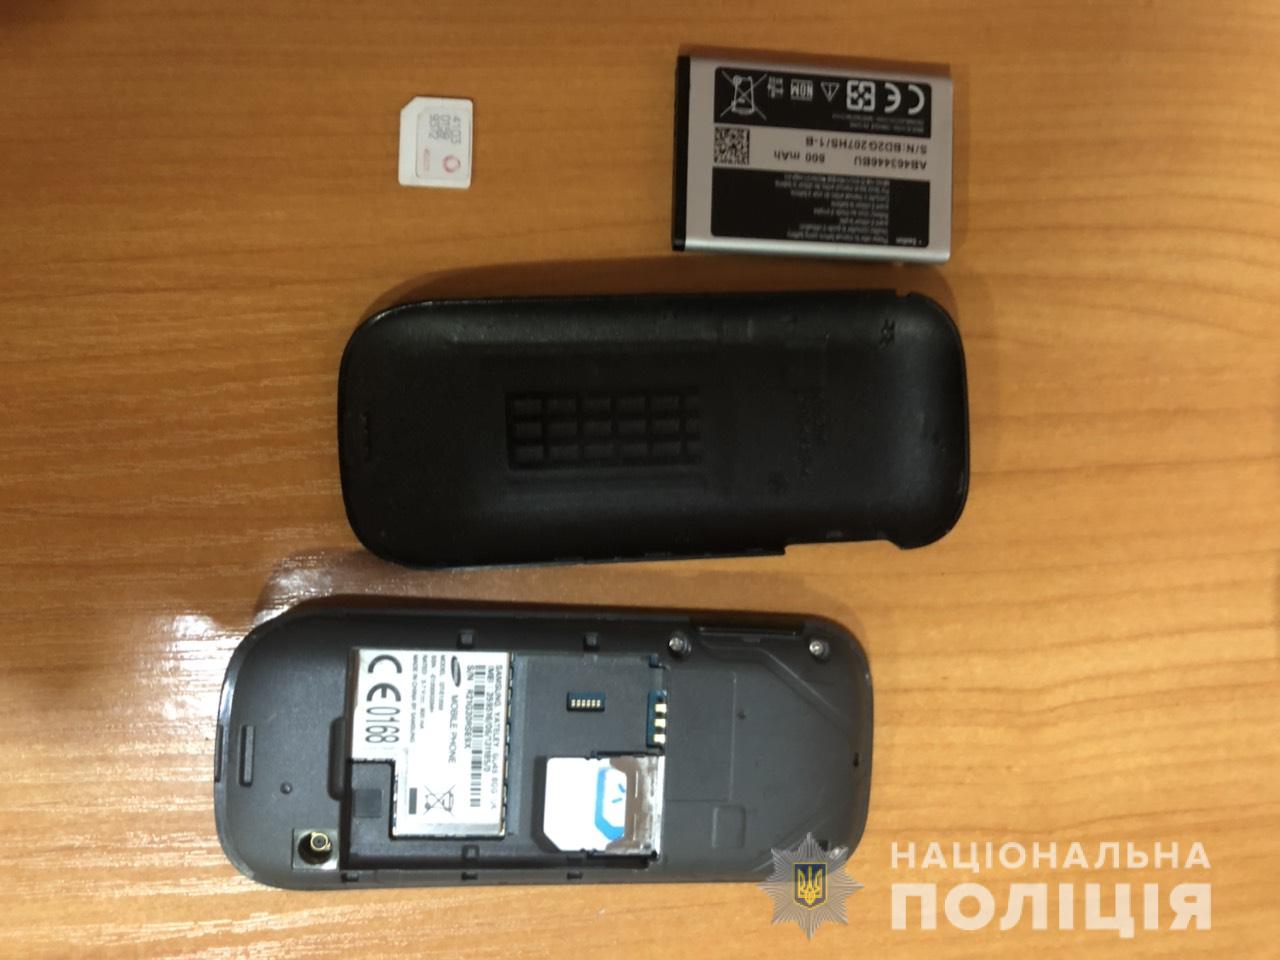 Обиделся на Одессу и "заминировал" Привоз: правоохранители задержали мужчину, который заявил о бомбе